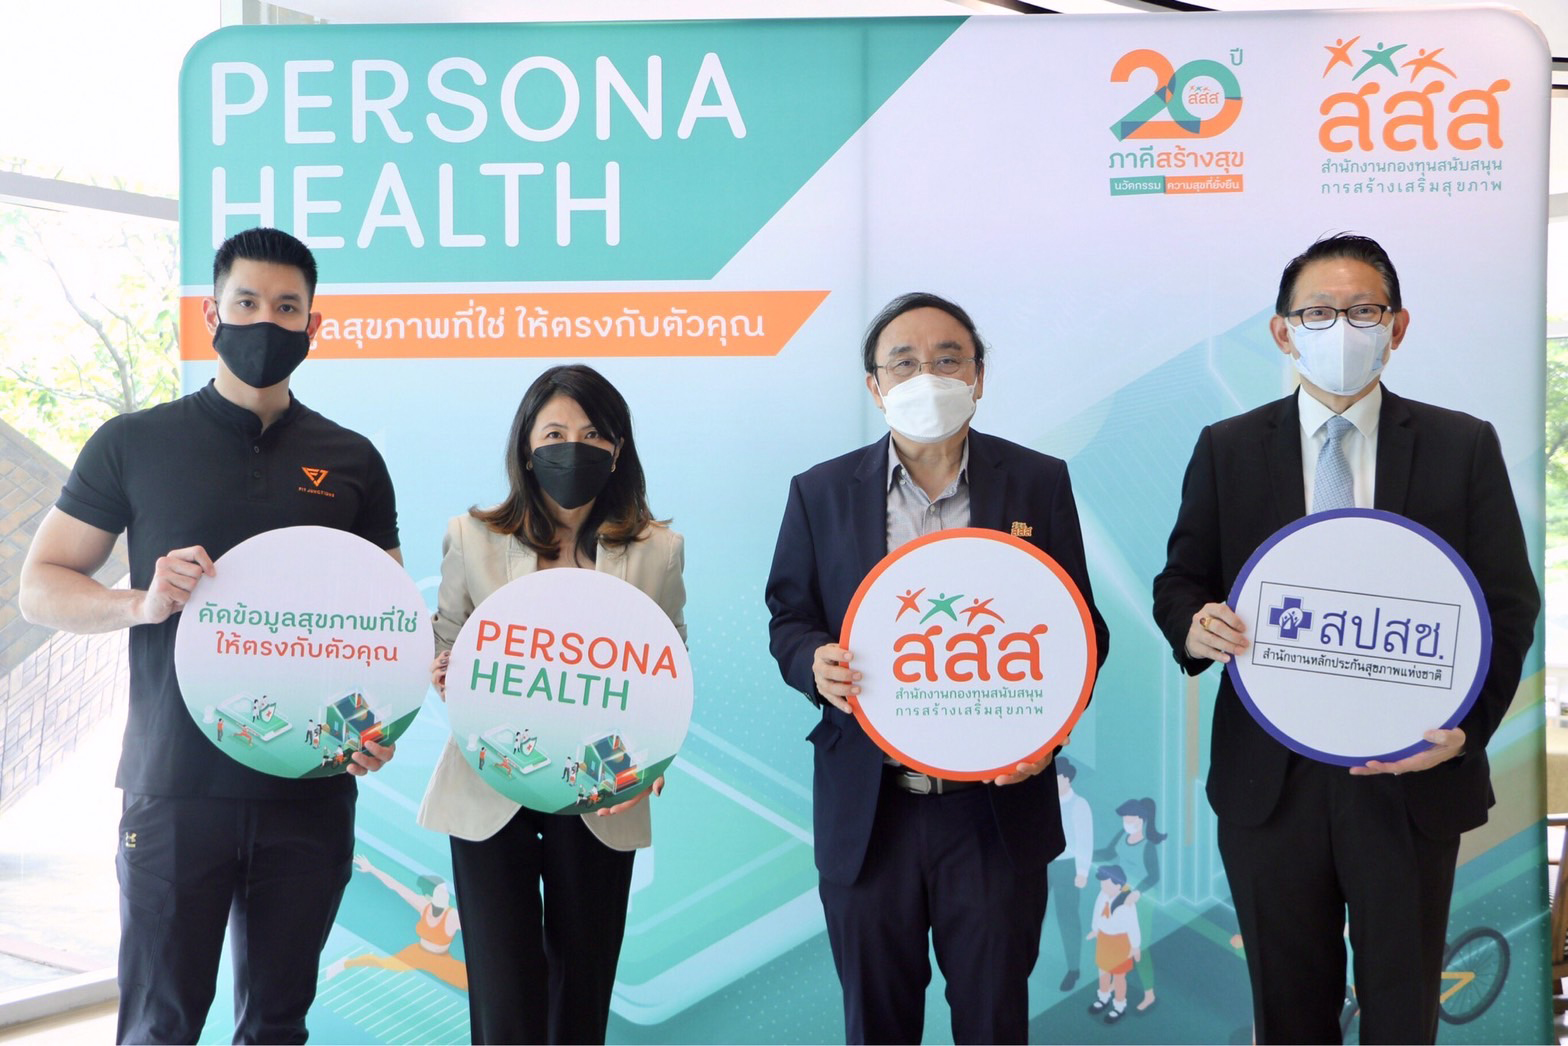 เปิดระบบ Persona Health สื่อเฉพาะคุณ เอื้อประชาชนเข้าถึงสื่อสุขภาวะ ได้ตลอด 24 ชม. thaihealth